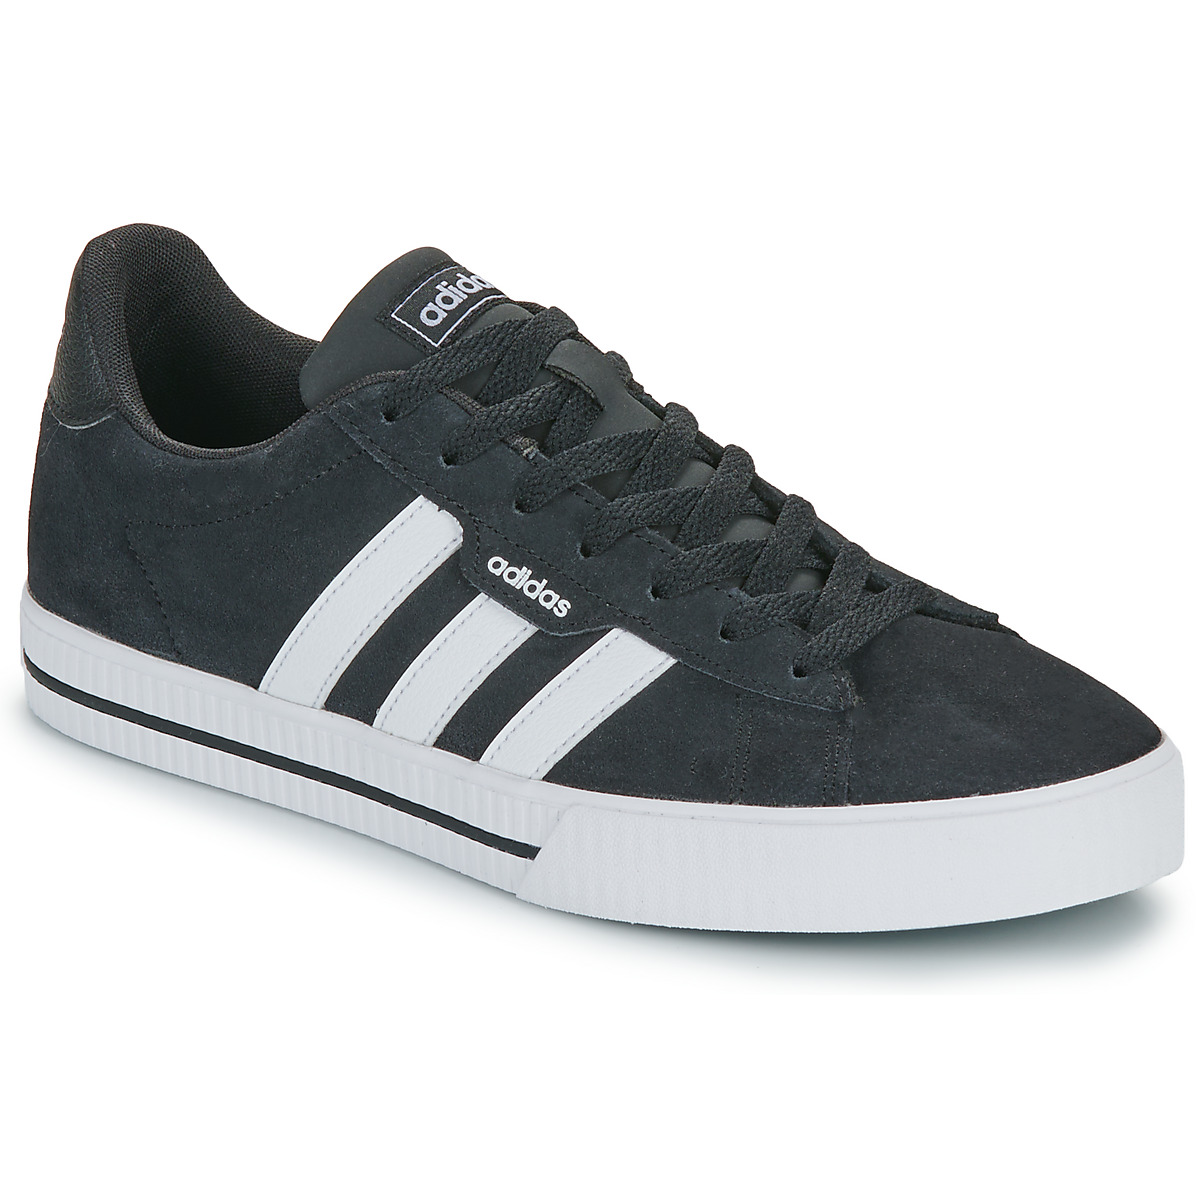 Adidas Daily 3.0 heren sneakers zwart/wit - Maat 47 - Echt leer